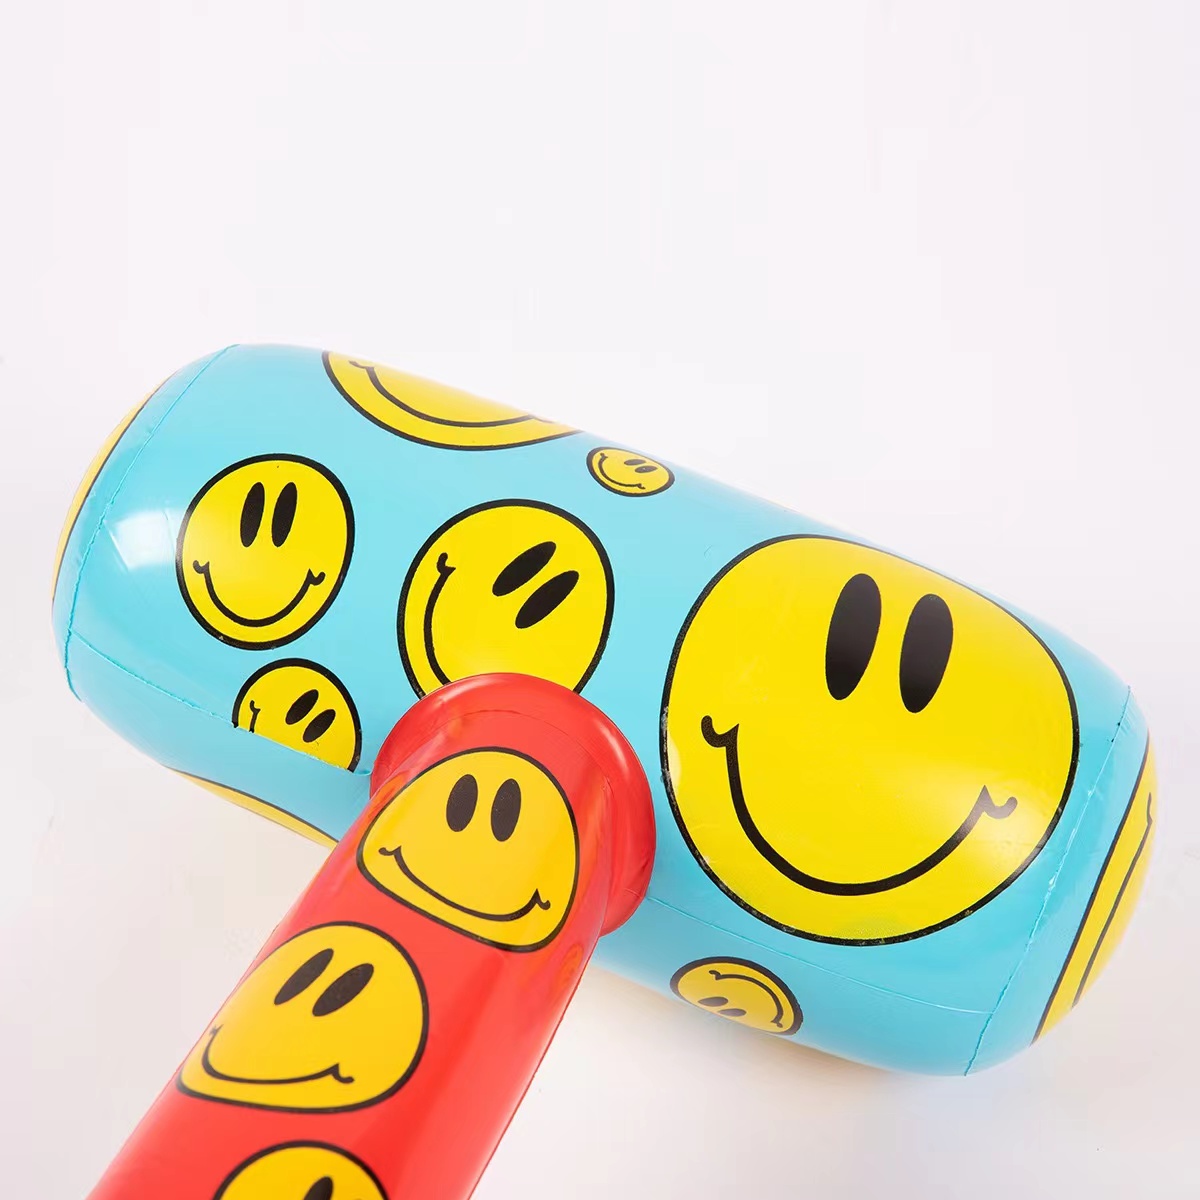 厂家PVC玩具 儿童玩具 充气锤子 笑脸 无伤力道具 棒槌玩具详情4